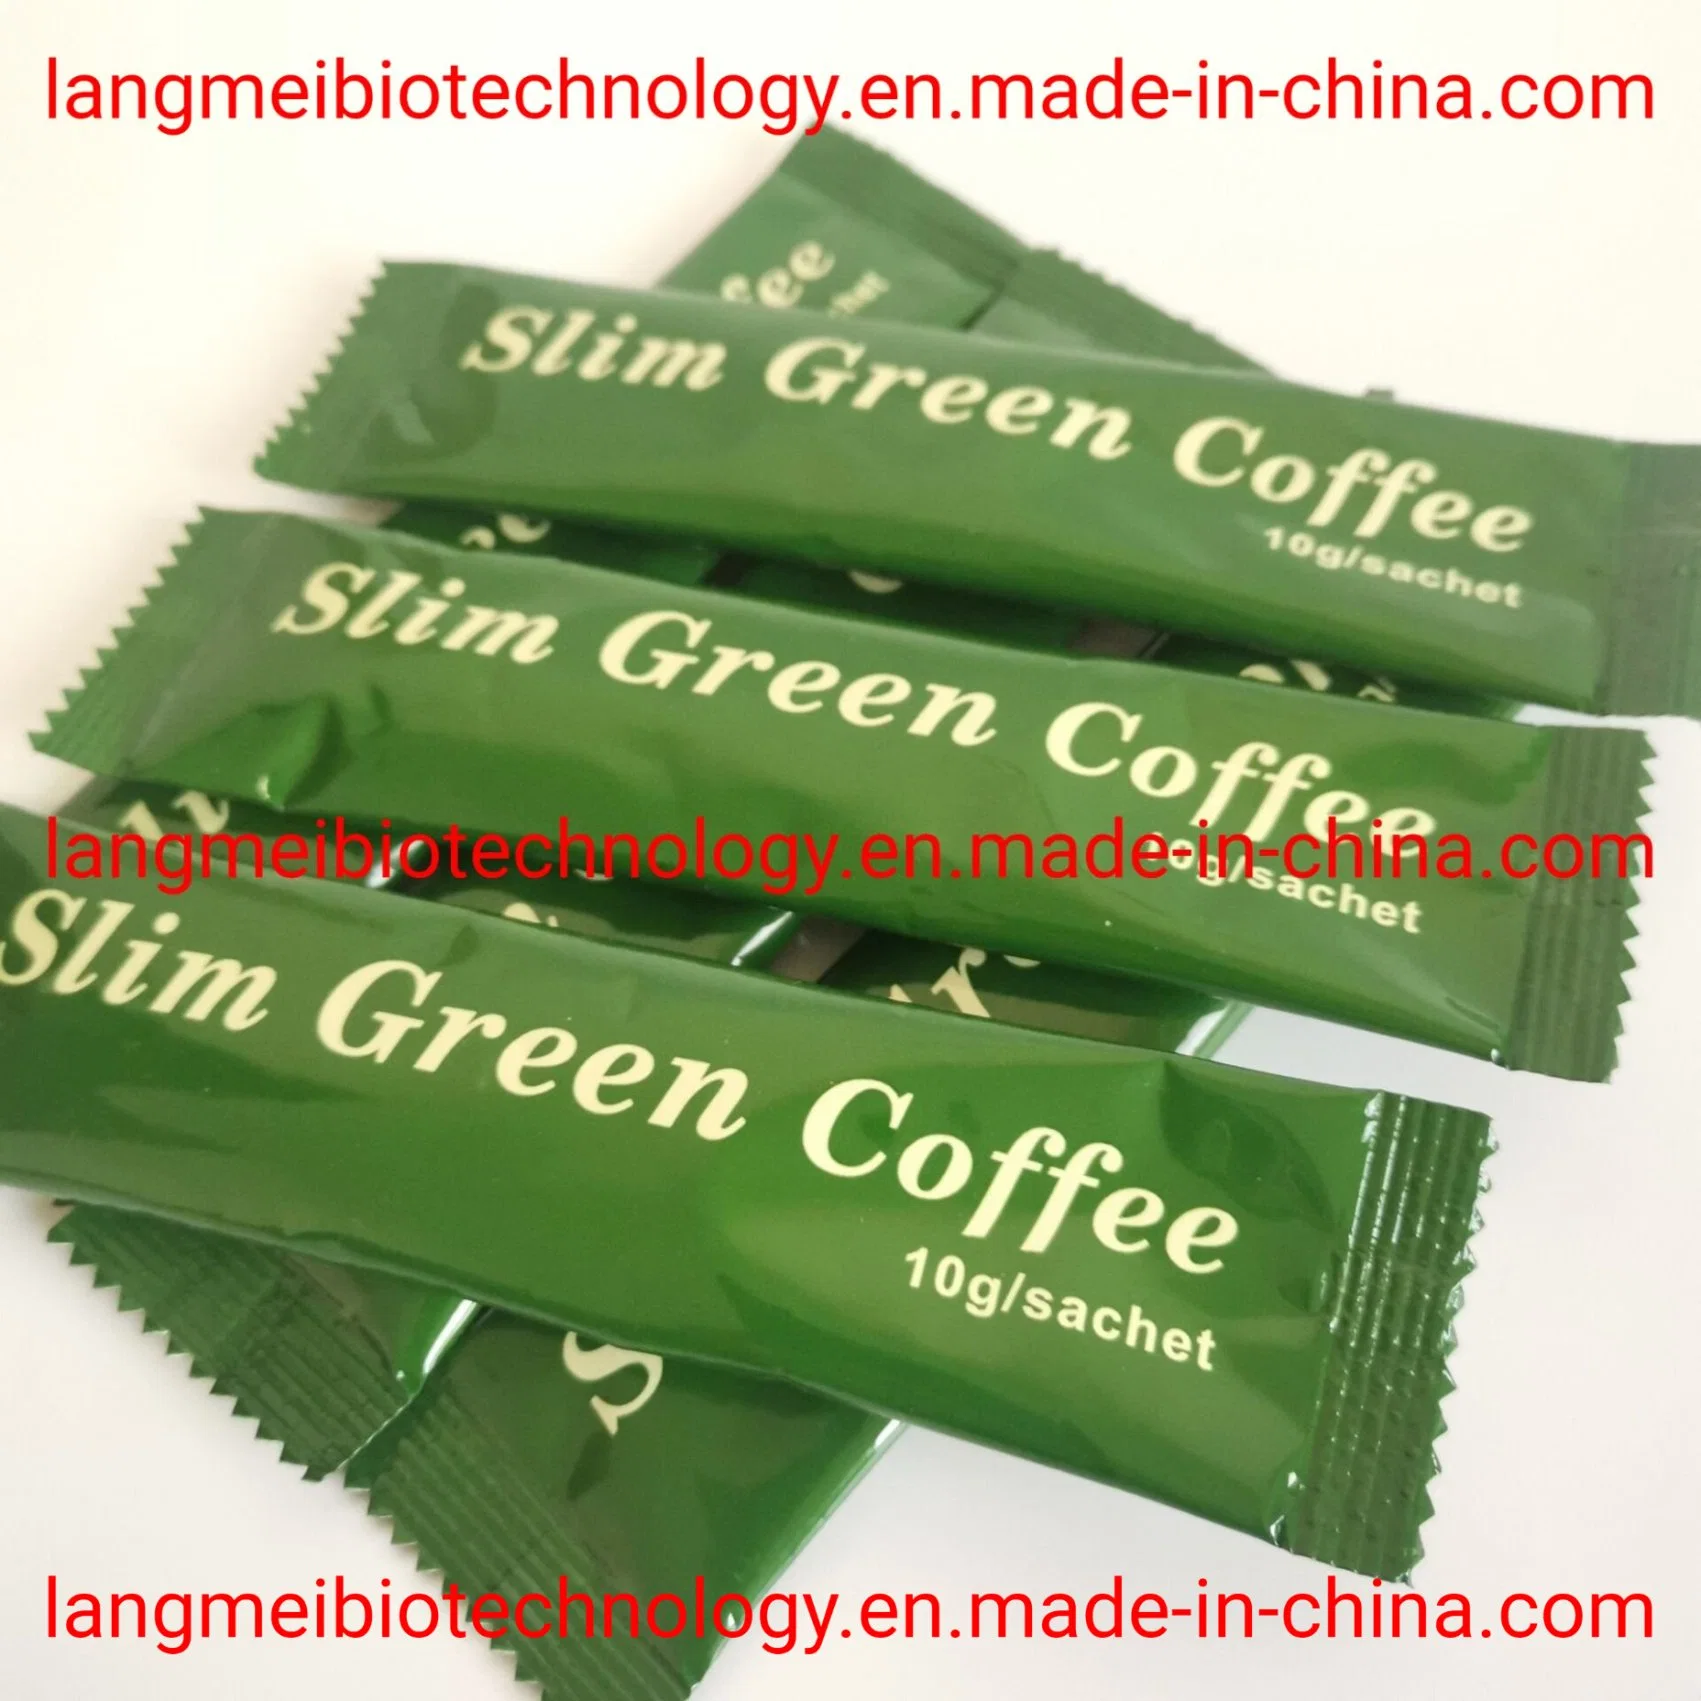 No Side 100% Original Instant Slimming Green Coffee Gewichtsverlust Kaffee